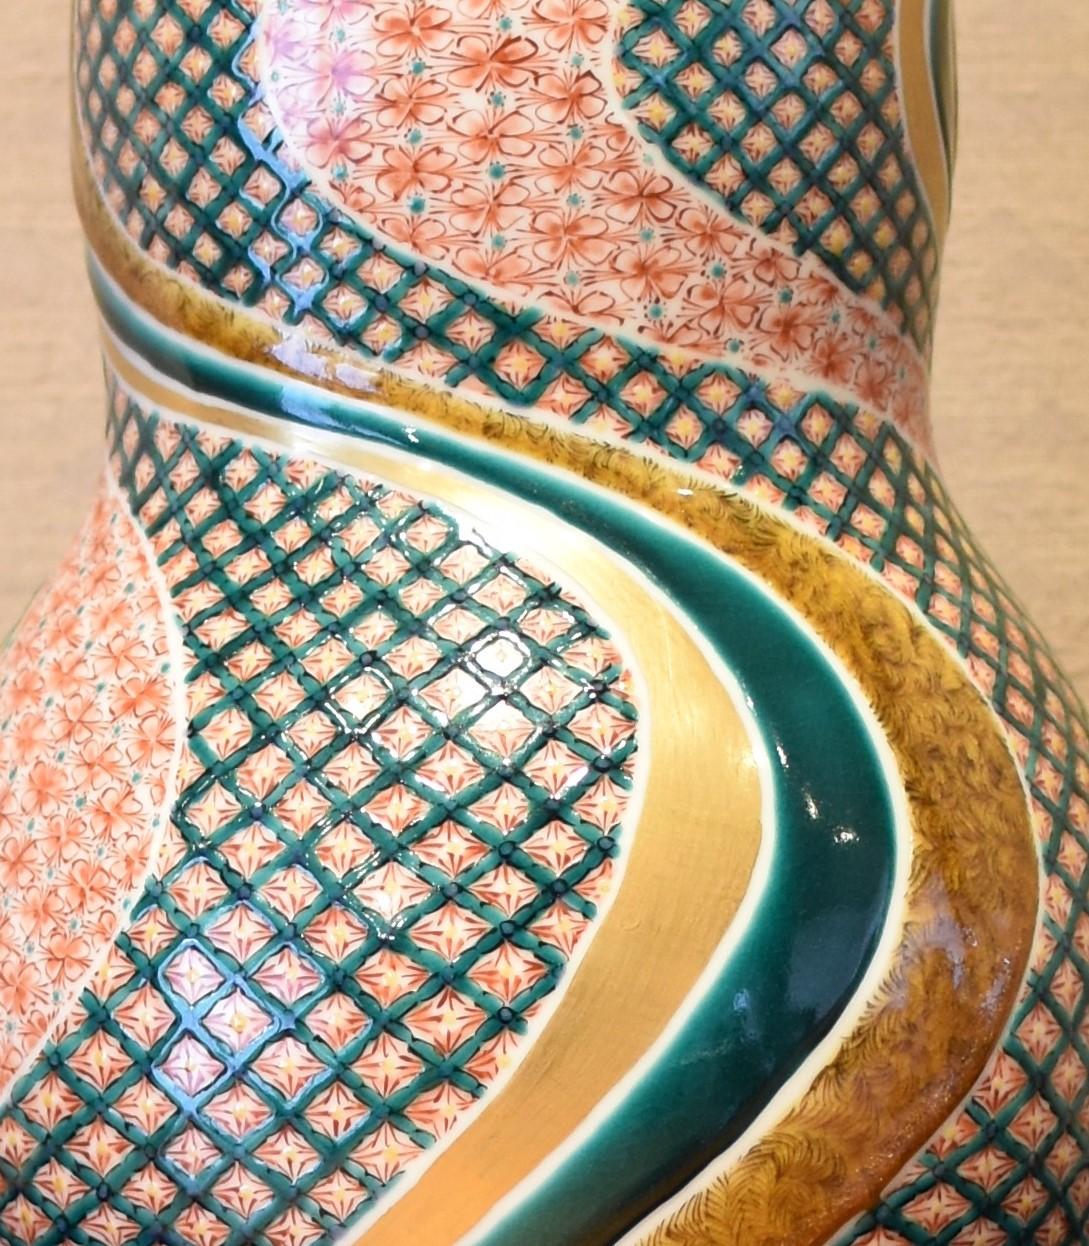 Meiji Vase contemporain japonais en porcelaine verte, rouge et or, réalisé par un maître artiste, 2 en vente